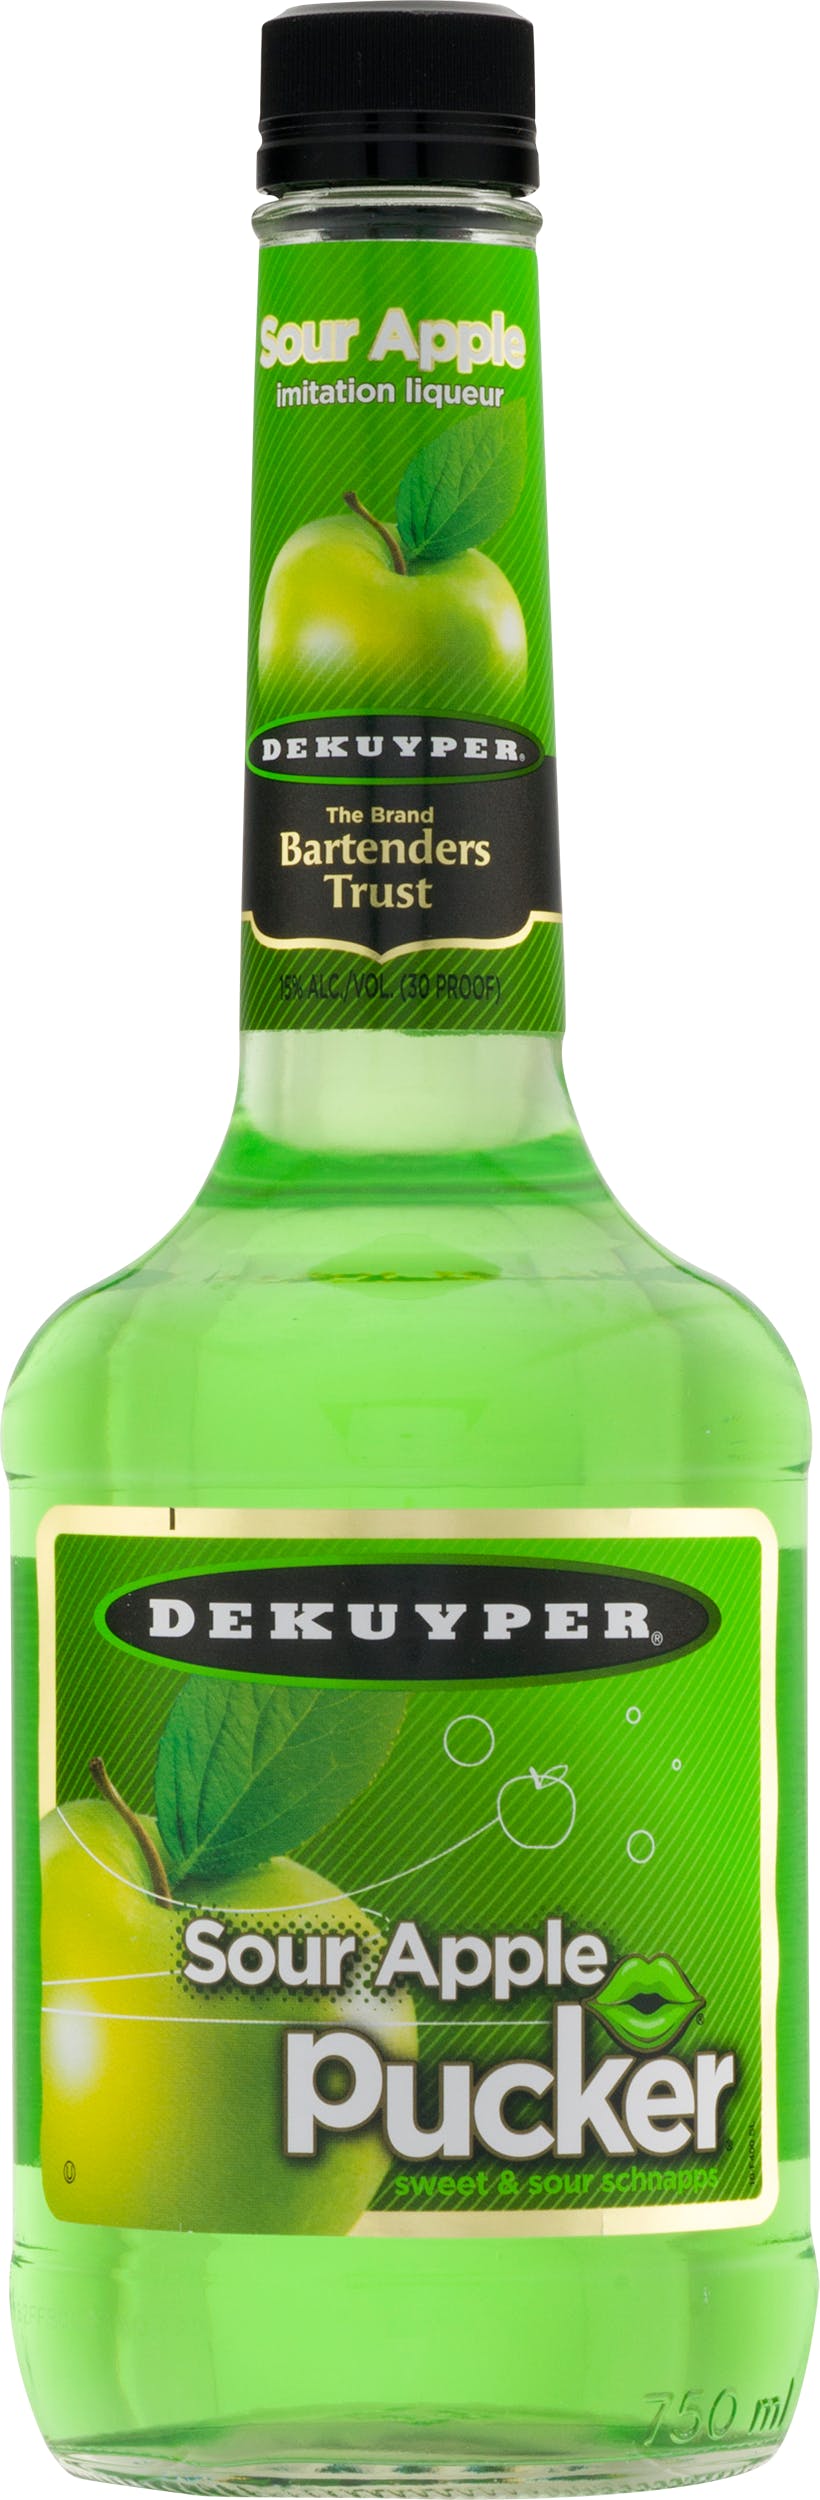 DeKuyper Melon Schnapps Liqueur